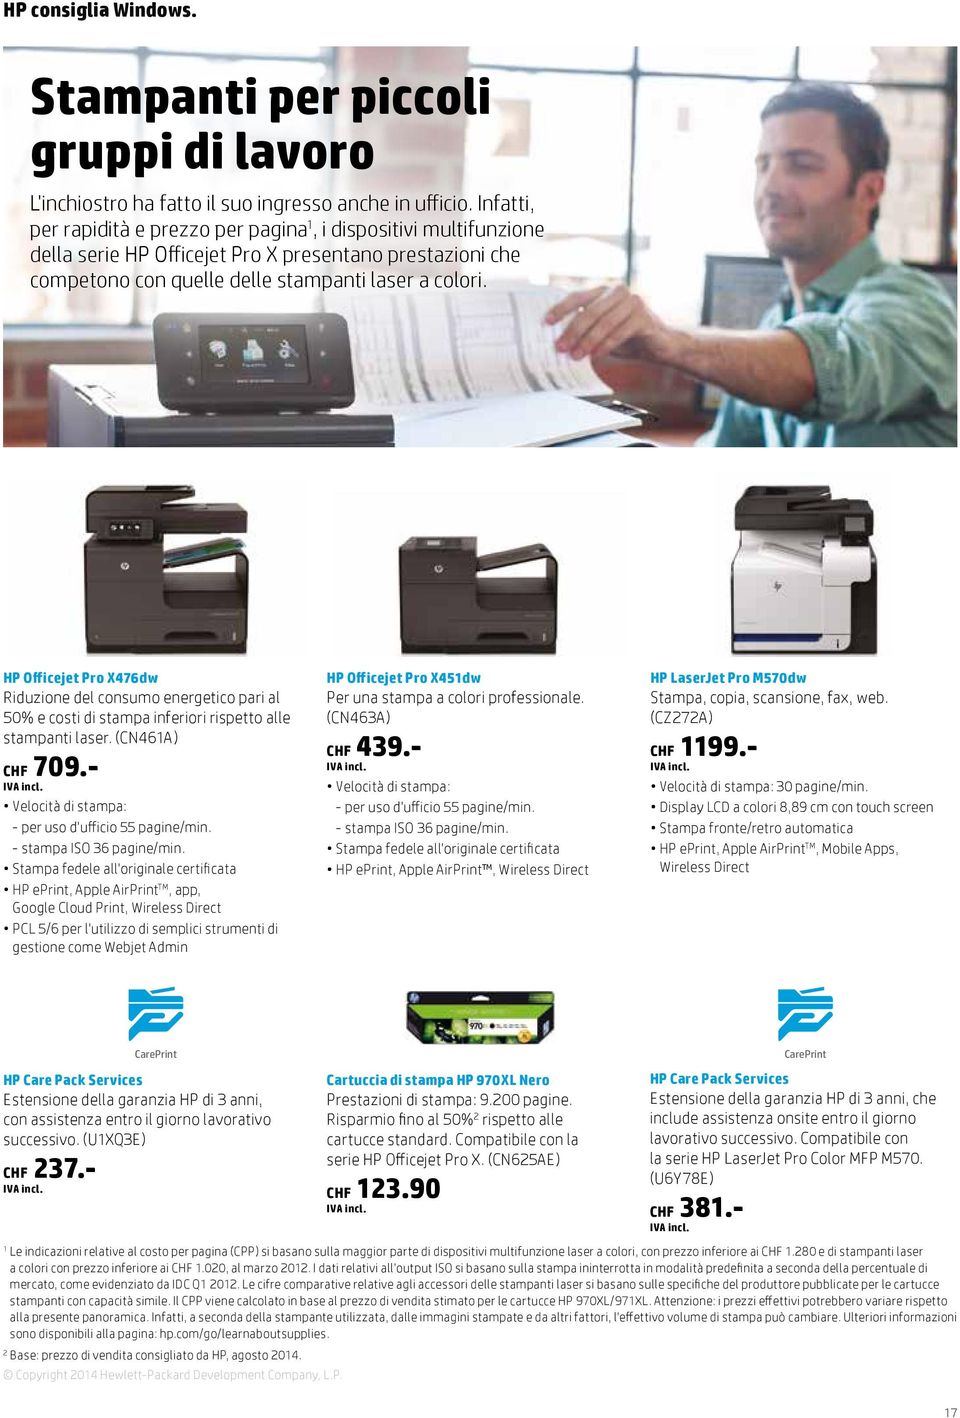 HP Officejet Pro X476dw Riduzione del consumo energetico pari al 50% e costi di stampa inferiori rispetto alle stampanti laser. (CN461A) CHF 709.